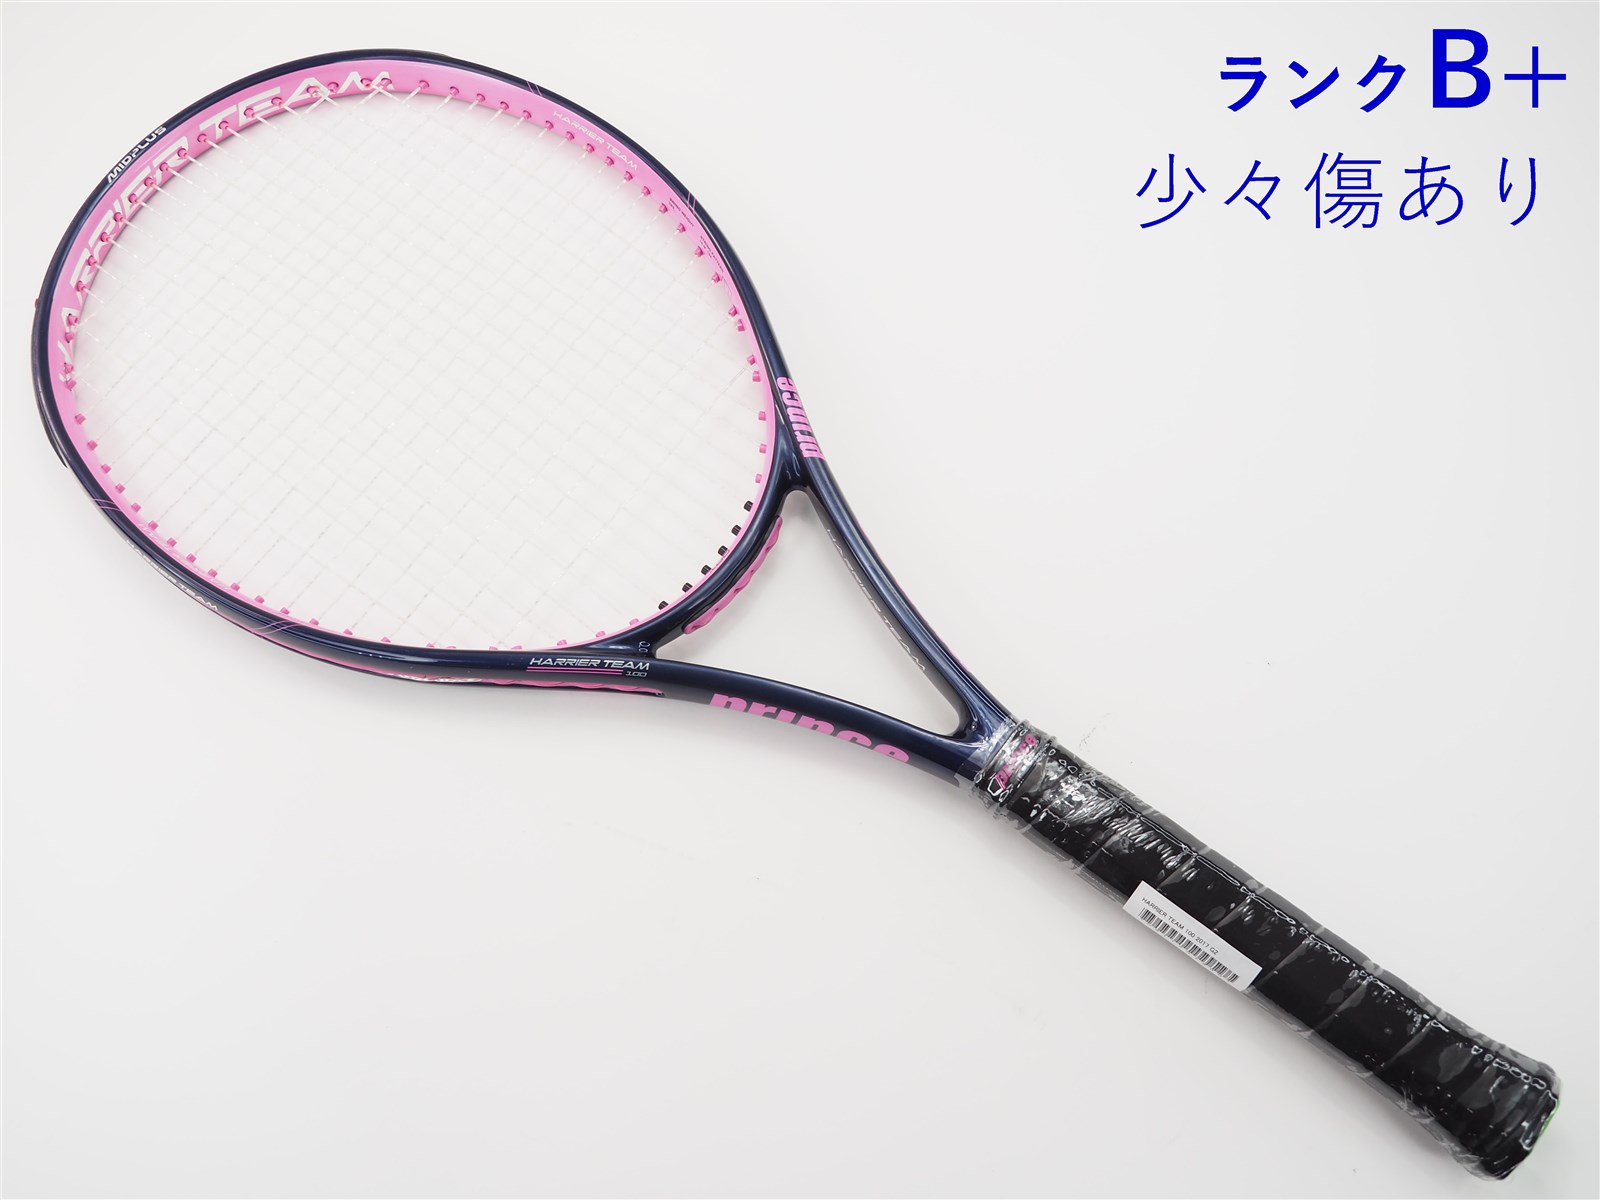 テニス ラケット プリンス ハリアープロ(G3)100inch 300gナイロンマルチテニスラケット